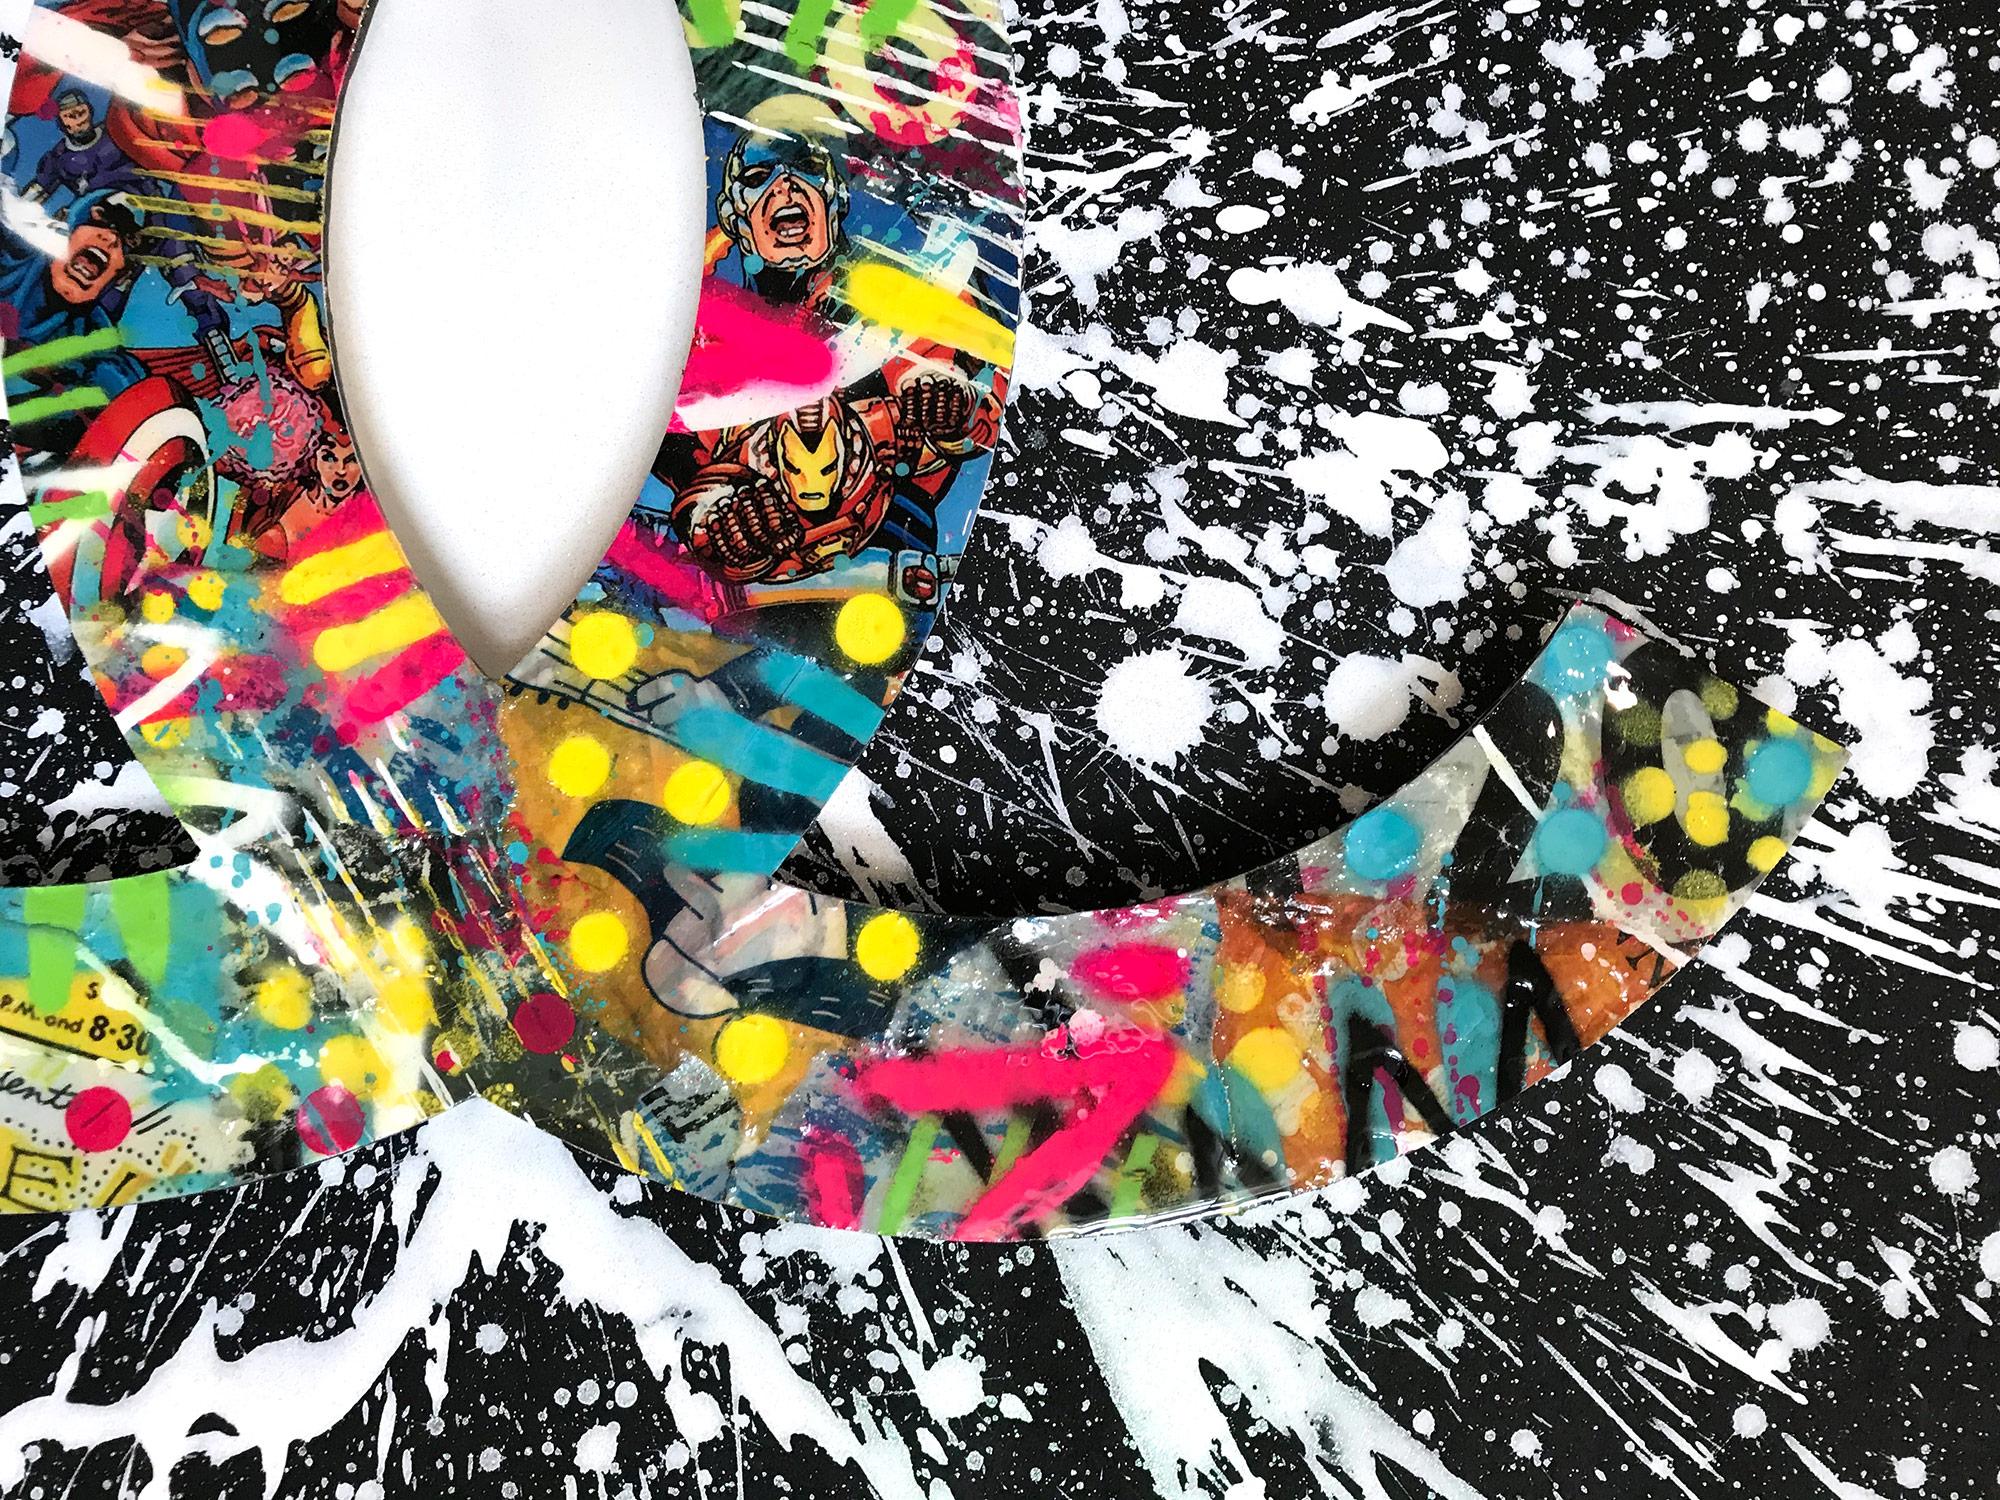 Dieses Stück zeigt ein abstraktes Chanel-Logo mit Farbausbrüchen und Pop-Art-Design.  Mit schönen ausdrucksstarken Kompositionen von Comics mit Sprühfarbe und Harz auf dem Chanel-Logo gemischt, stellt der Künstler dann Helligkeit mit einem